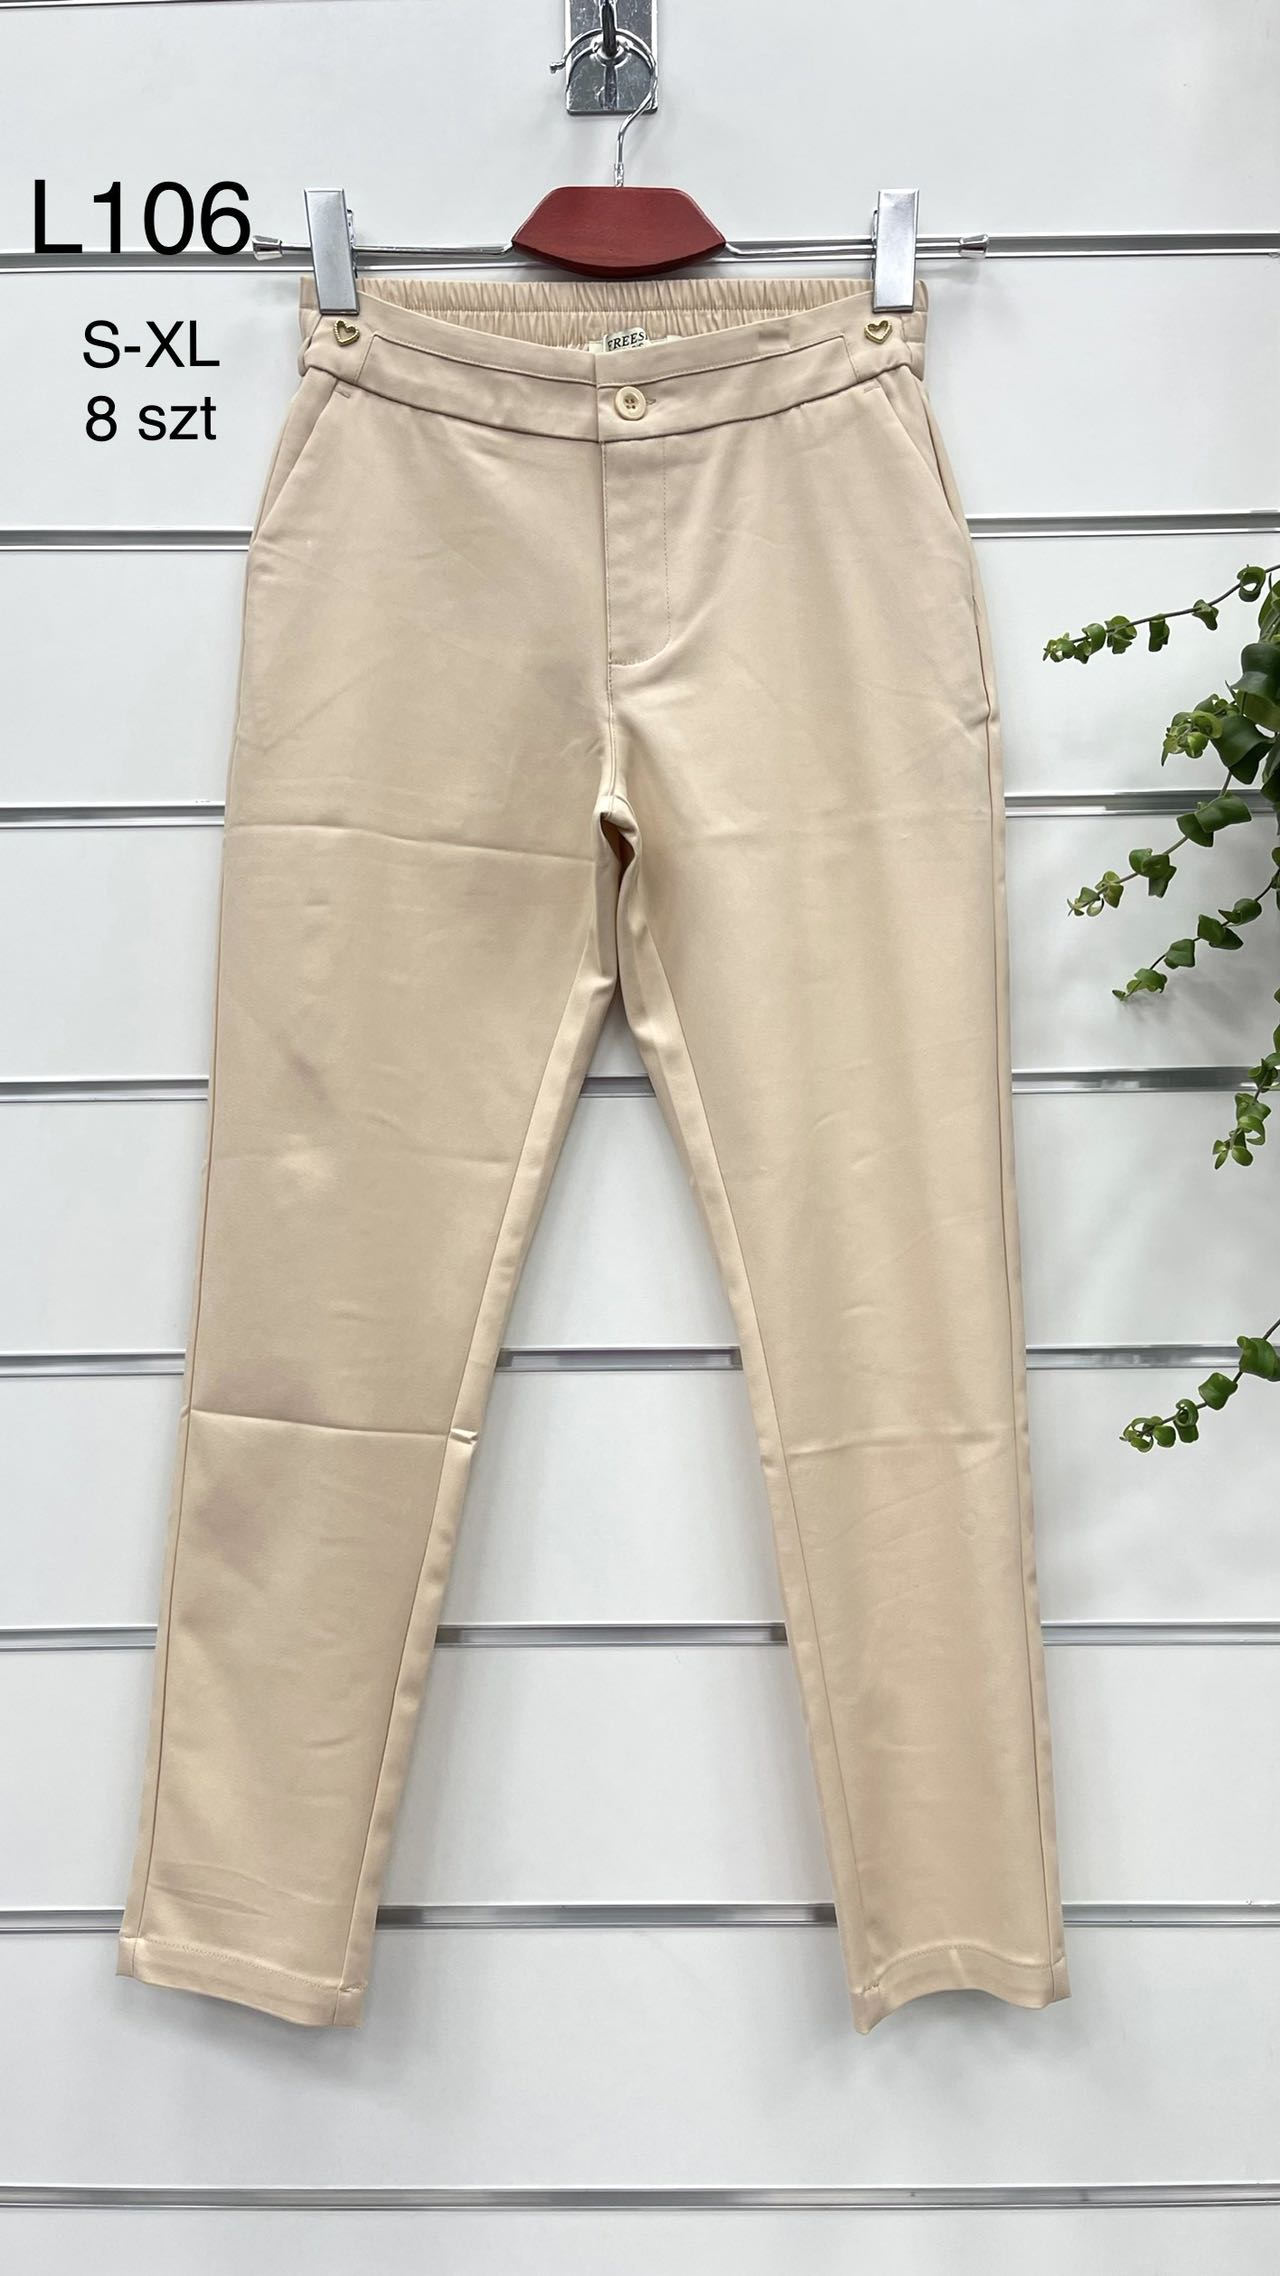 Spodnie  damskie materiałowe   Roz S-XL.  1 kolor . Paczka 8szt